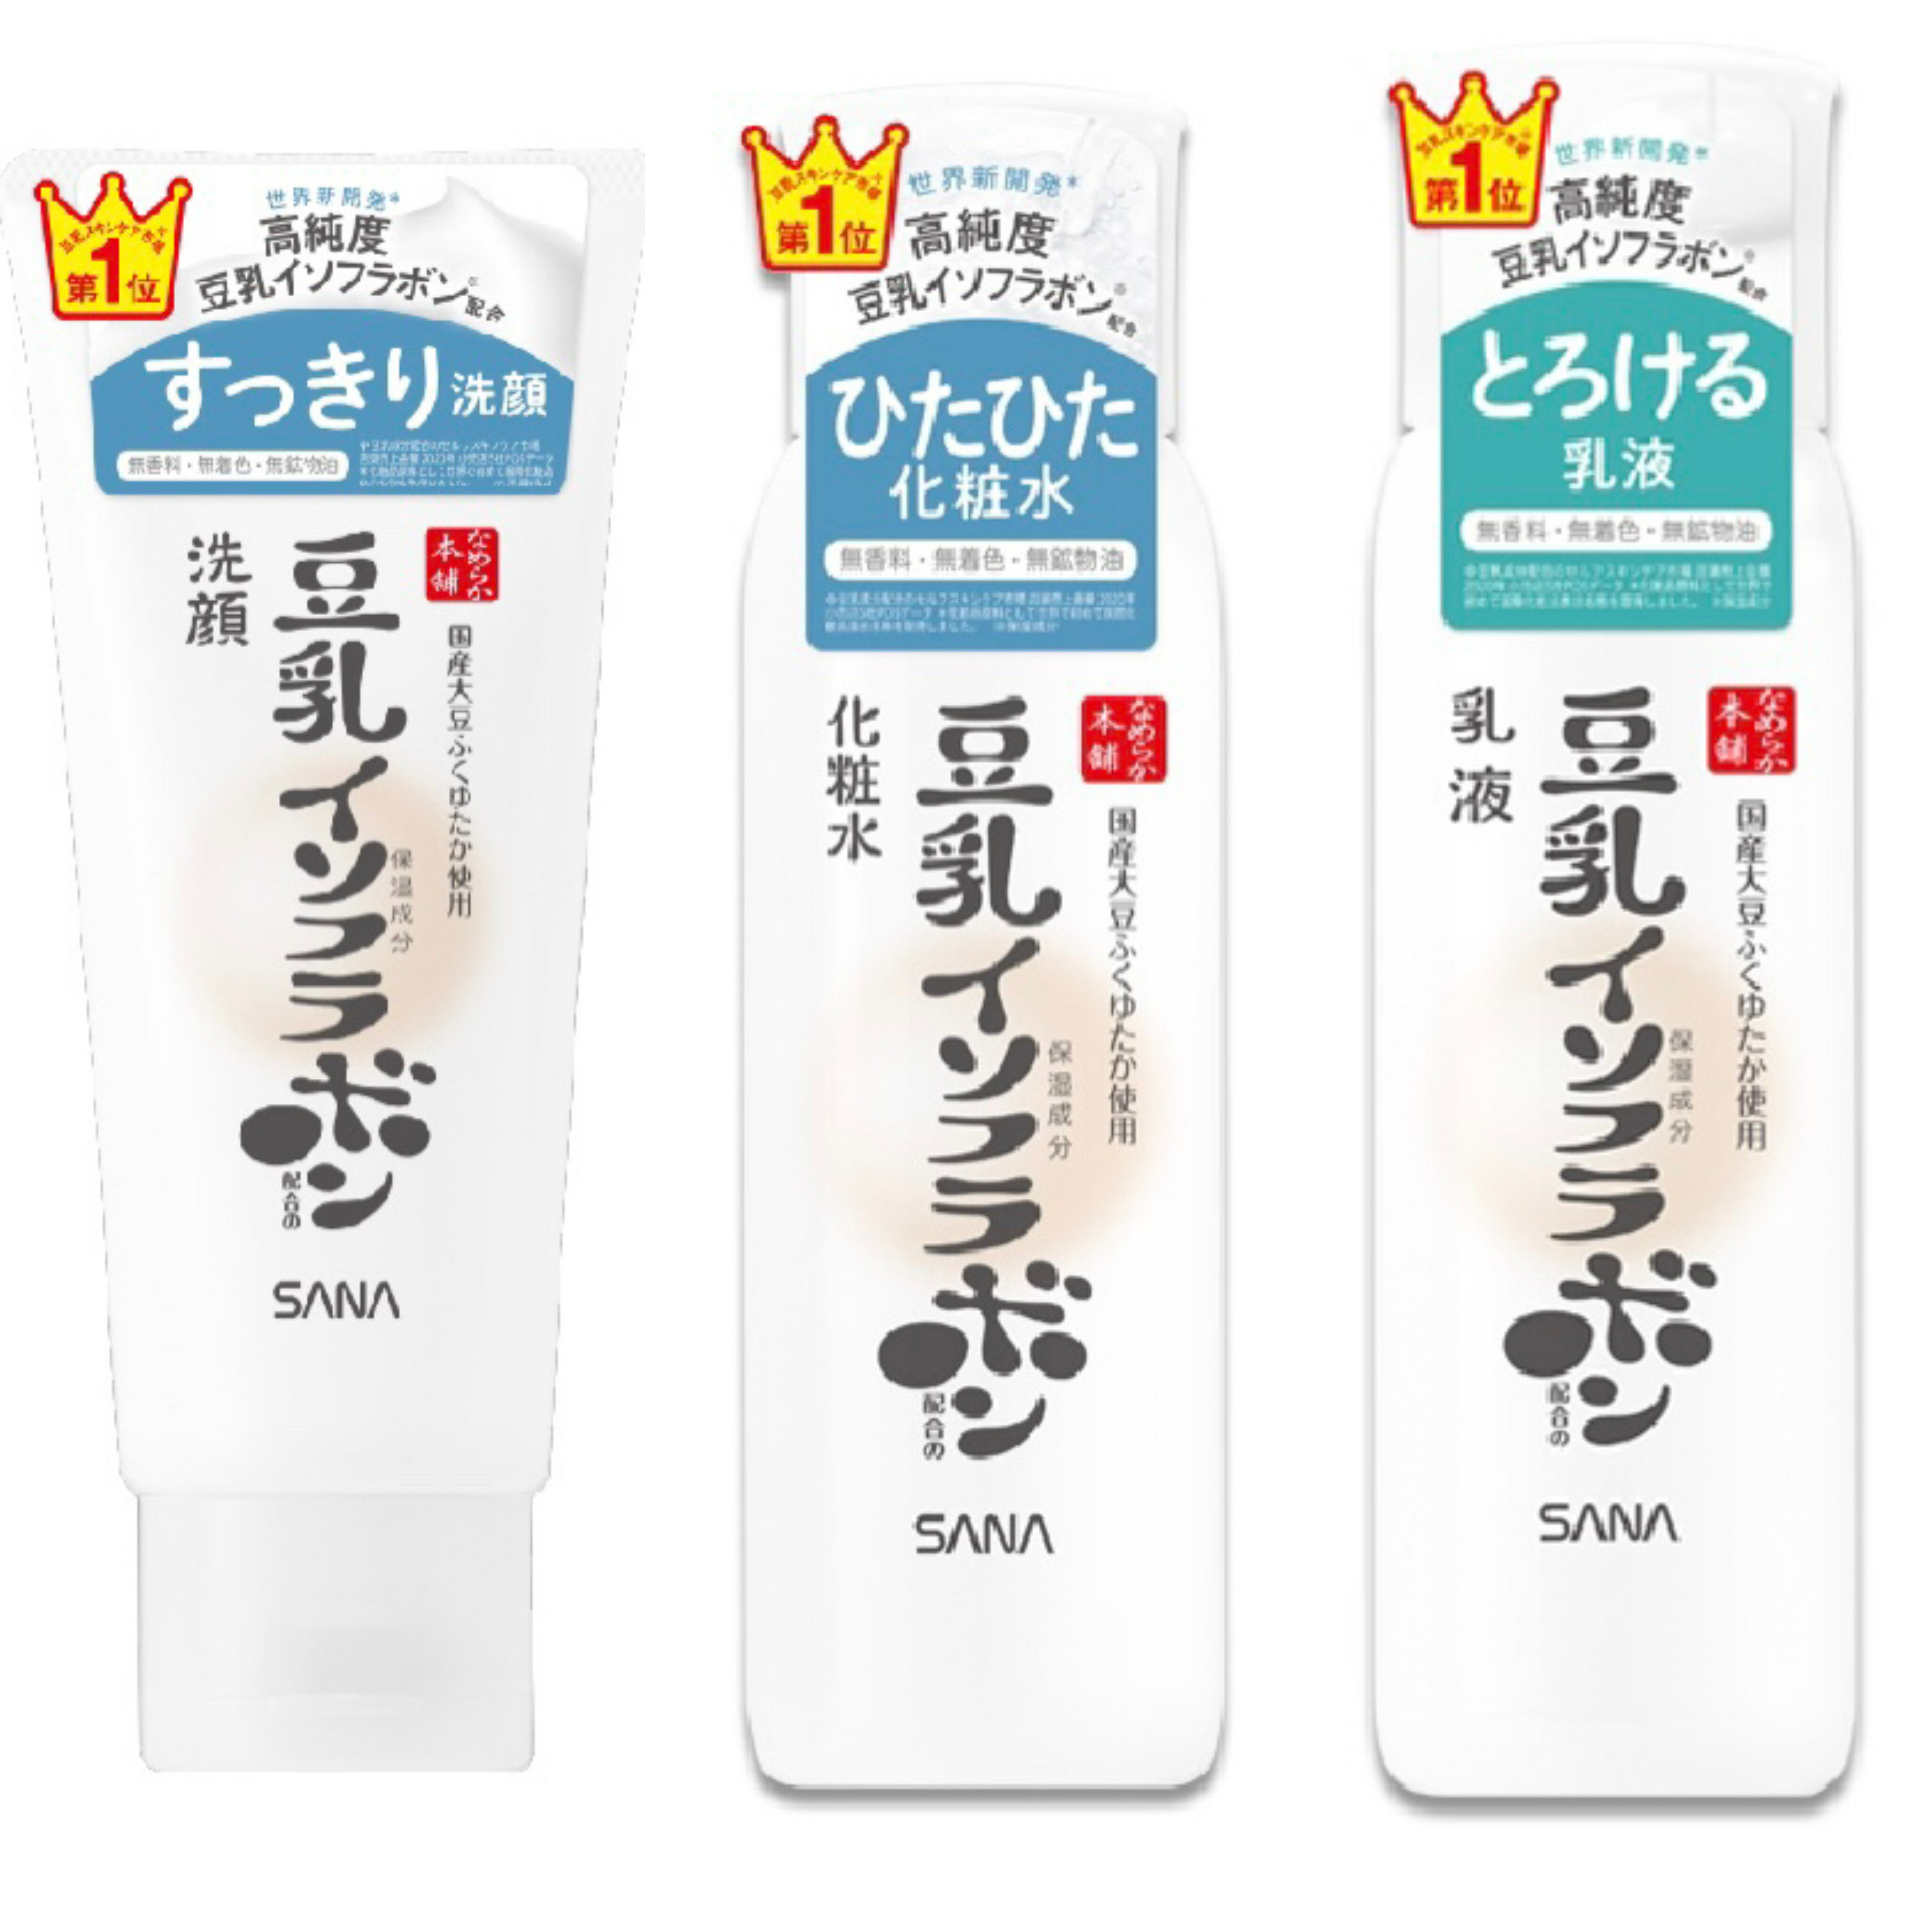 【台灣公司貨】SANA 豆乳美肌系列 洗面乳/化妝水/乳液